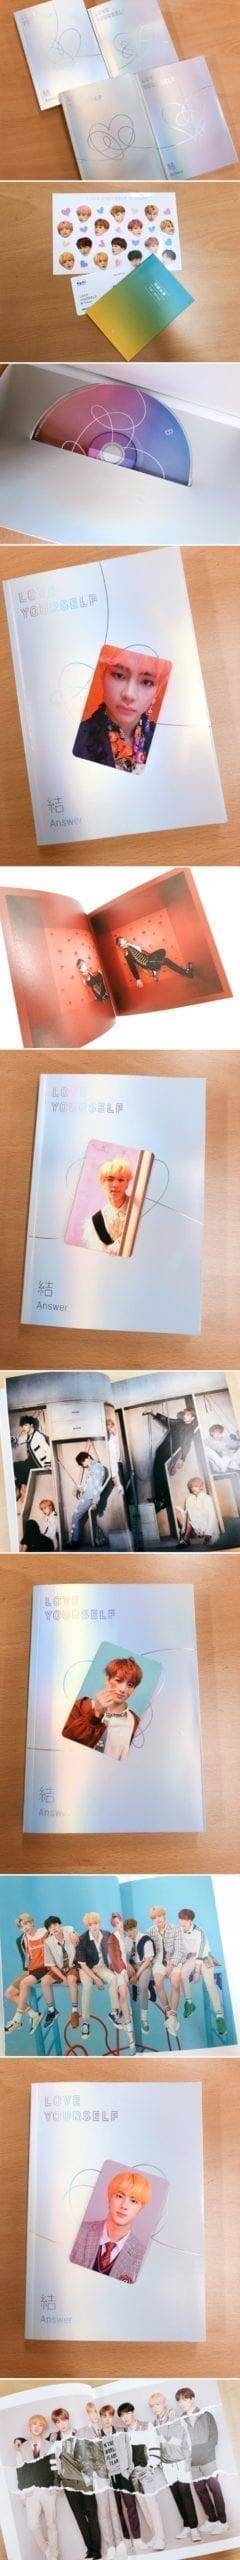 BTS LOVE YOURSELF / ANSWER Album Set CD+Photo Book+Photo Card+Mini Book+Sticker Army Box cb5feb1b7314637725a2e7: E|F|L